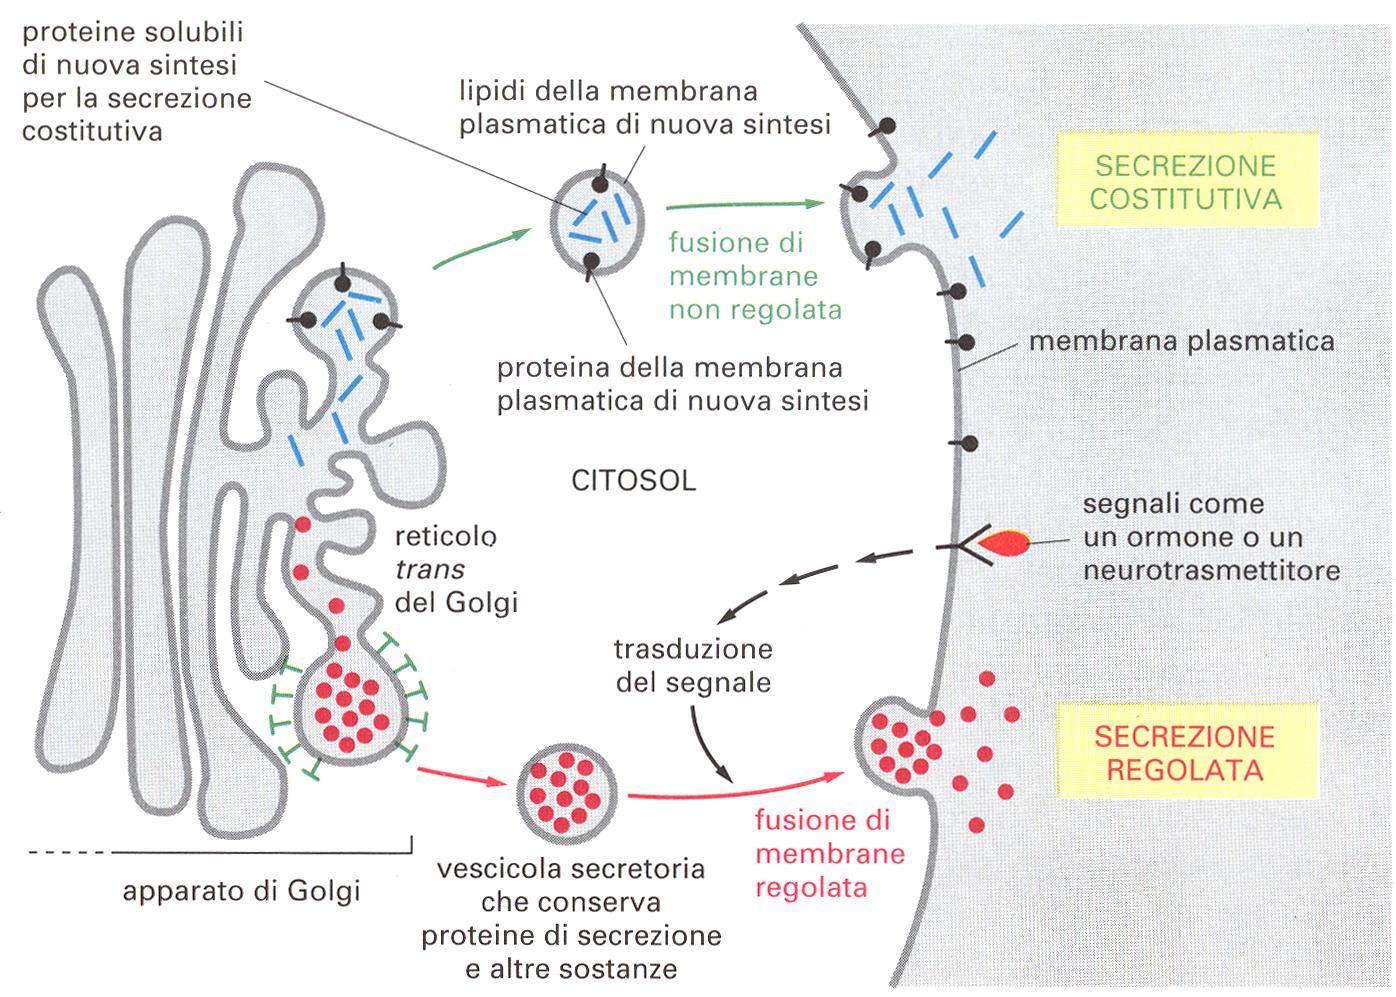 Esocitosi Vescicole secretorie. Le proteine sono soggette a tagli proteolitici durante la formazione delle vescicole secretorie (encefalina).